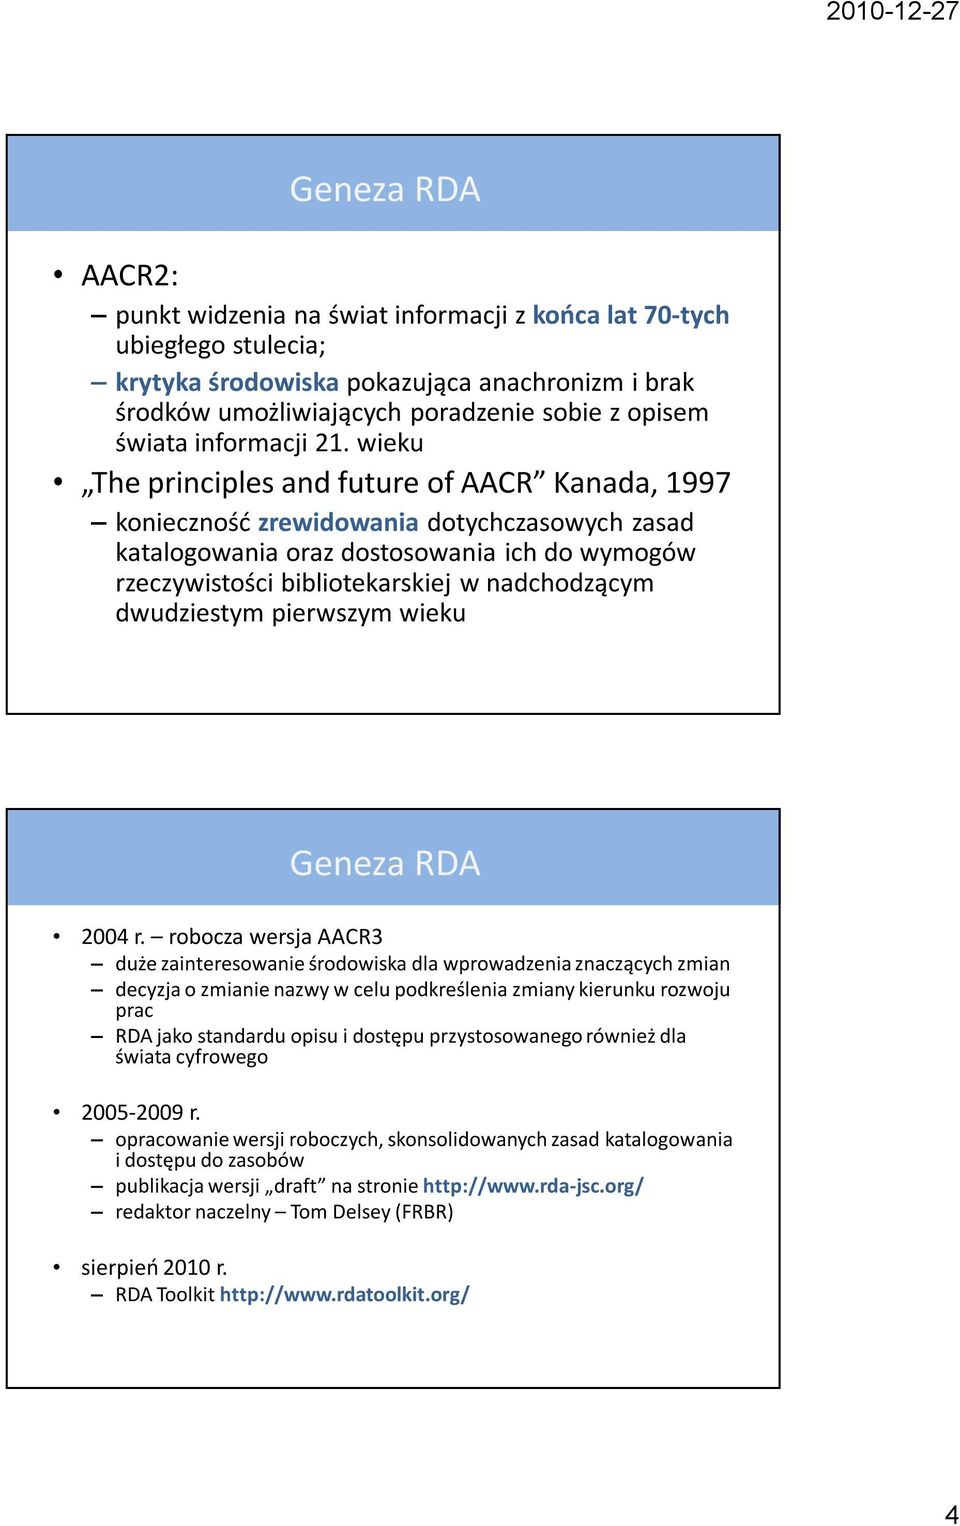 wieku The principles and future of AACR Kanada, 1997 konieczność zrewidowania dotychczasowych zasad katalogowania oraz dostosowania ich do wymogów rzeczywistości bibliotekarskiej w nadchodzącym